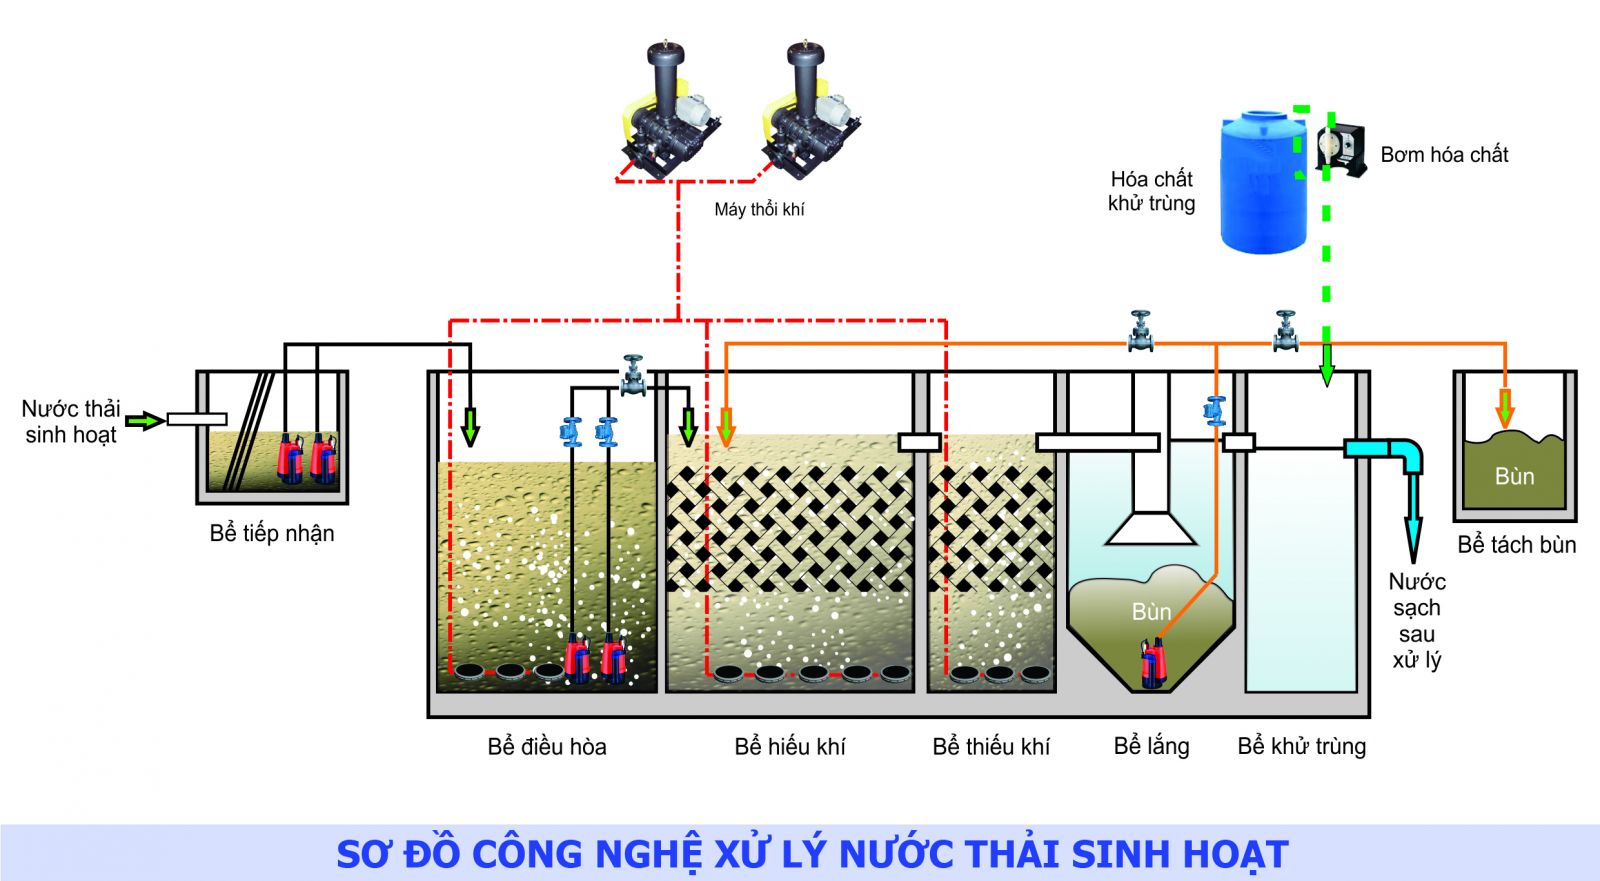  xây dựng hệ thống xử lý nước thải sinh hoạt